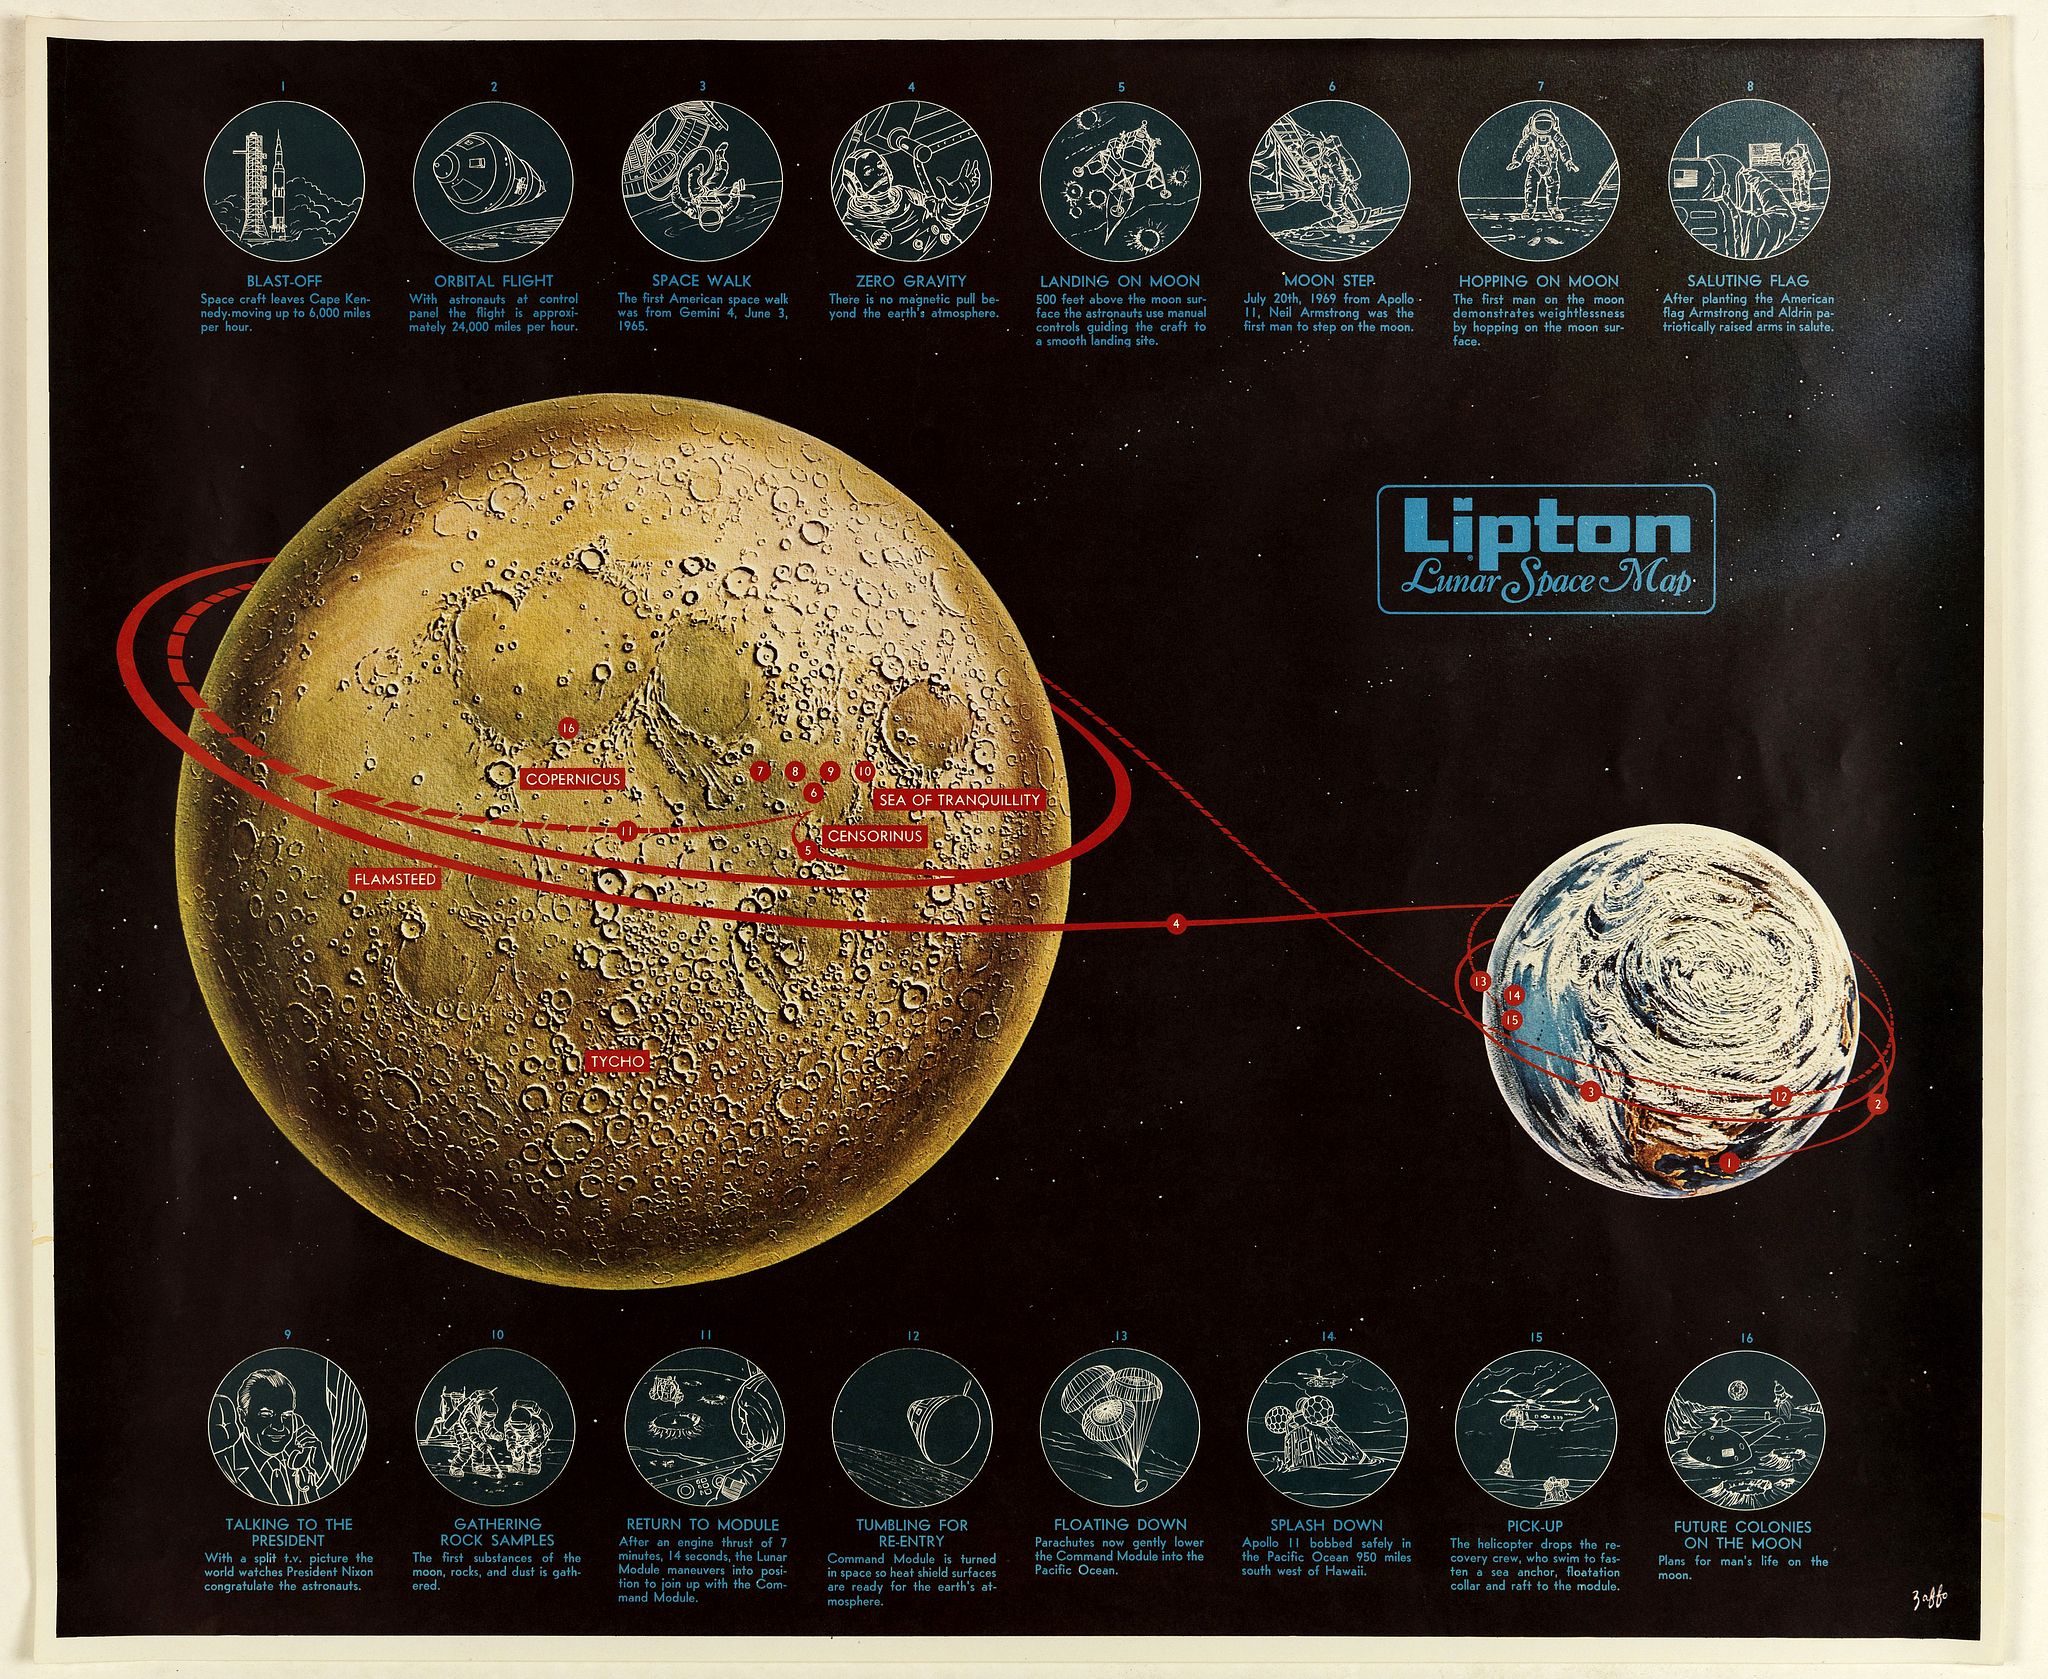 Lipton Lunar Space Map